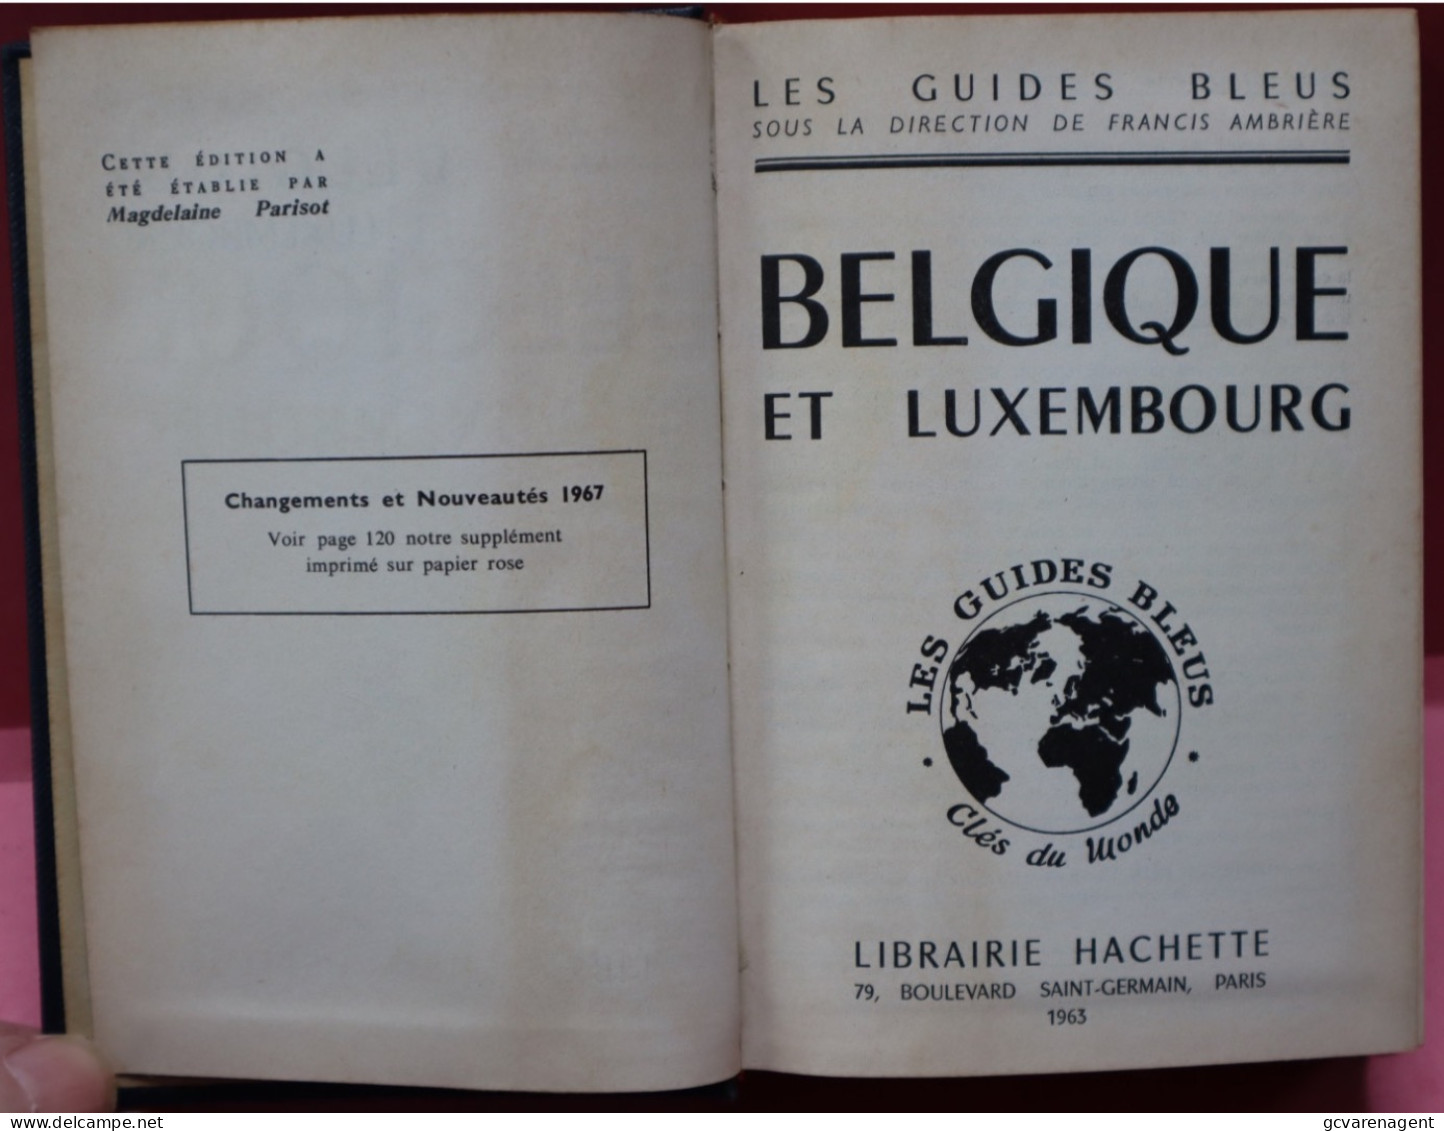 LES GUIDES BLEUS  1963  BELGIQUES  LUXEMBOUR  BELLE ETAT COMPLET  BON ETAT   VOIR IMAGES - Tourism